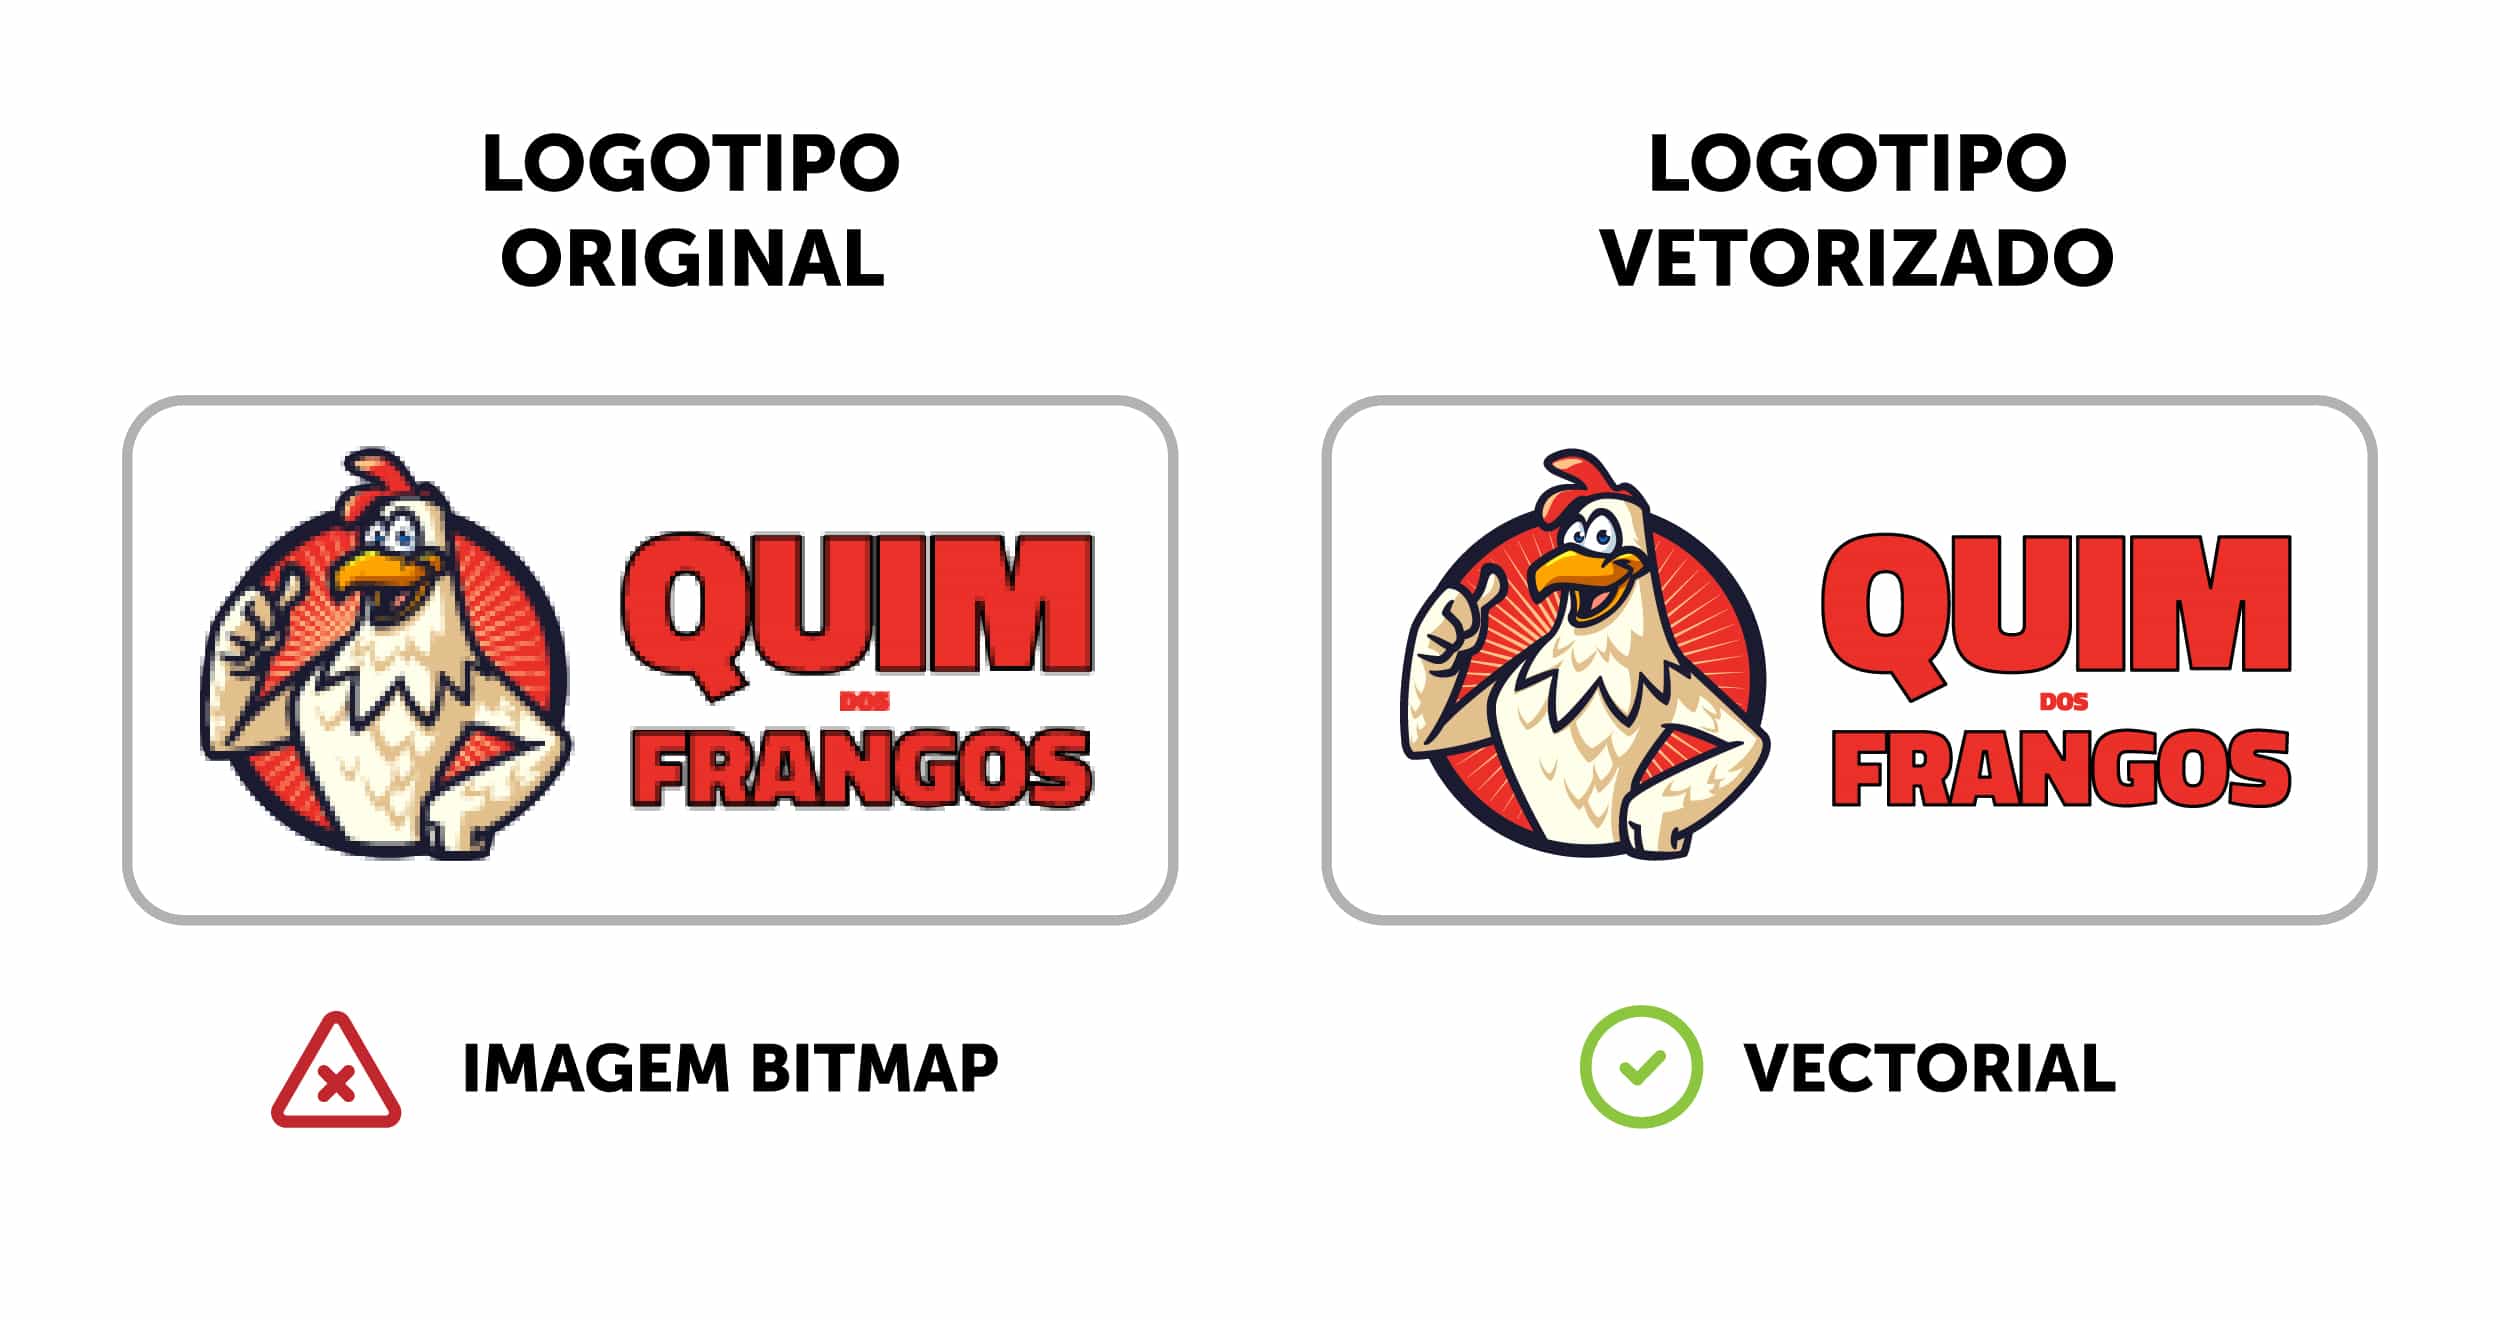 Comparação logotipo original e logotipo vectorizado